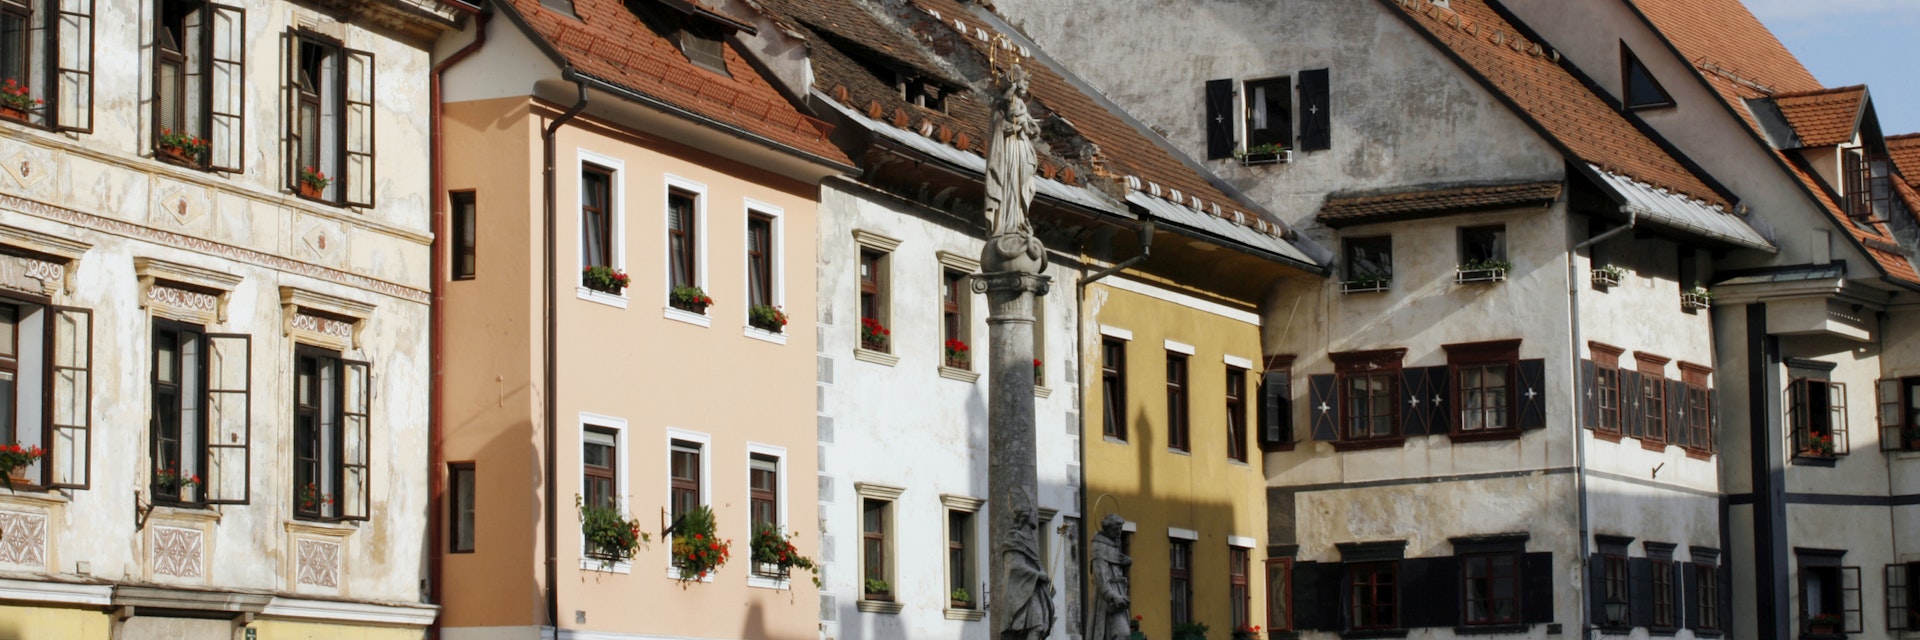 Scofja Loka, Mestni trg with townhouses, northwest Slovenia.